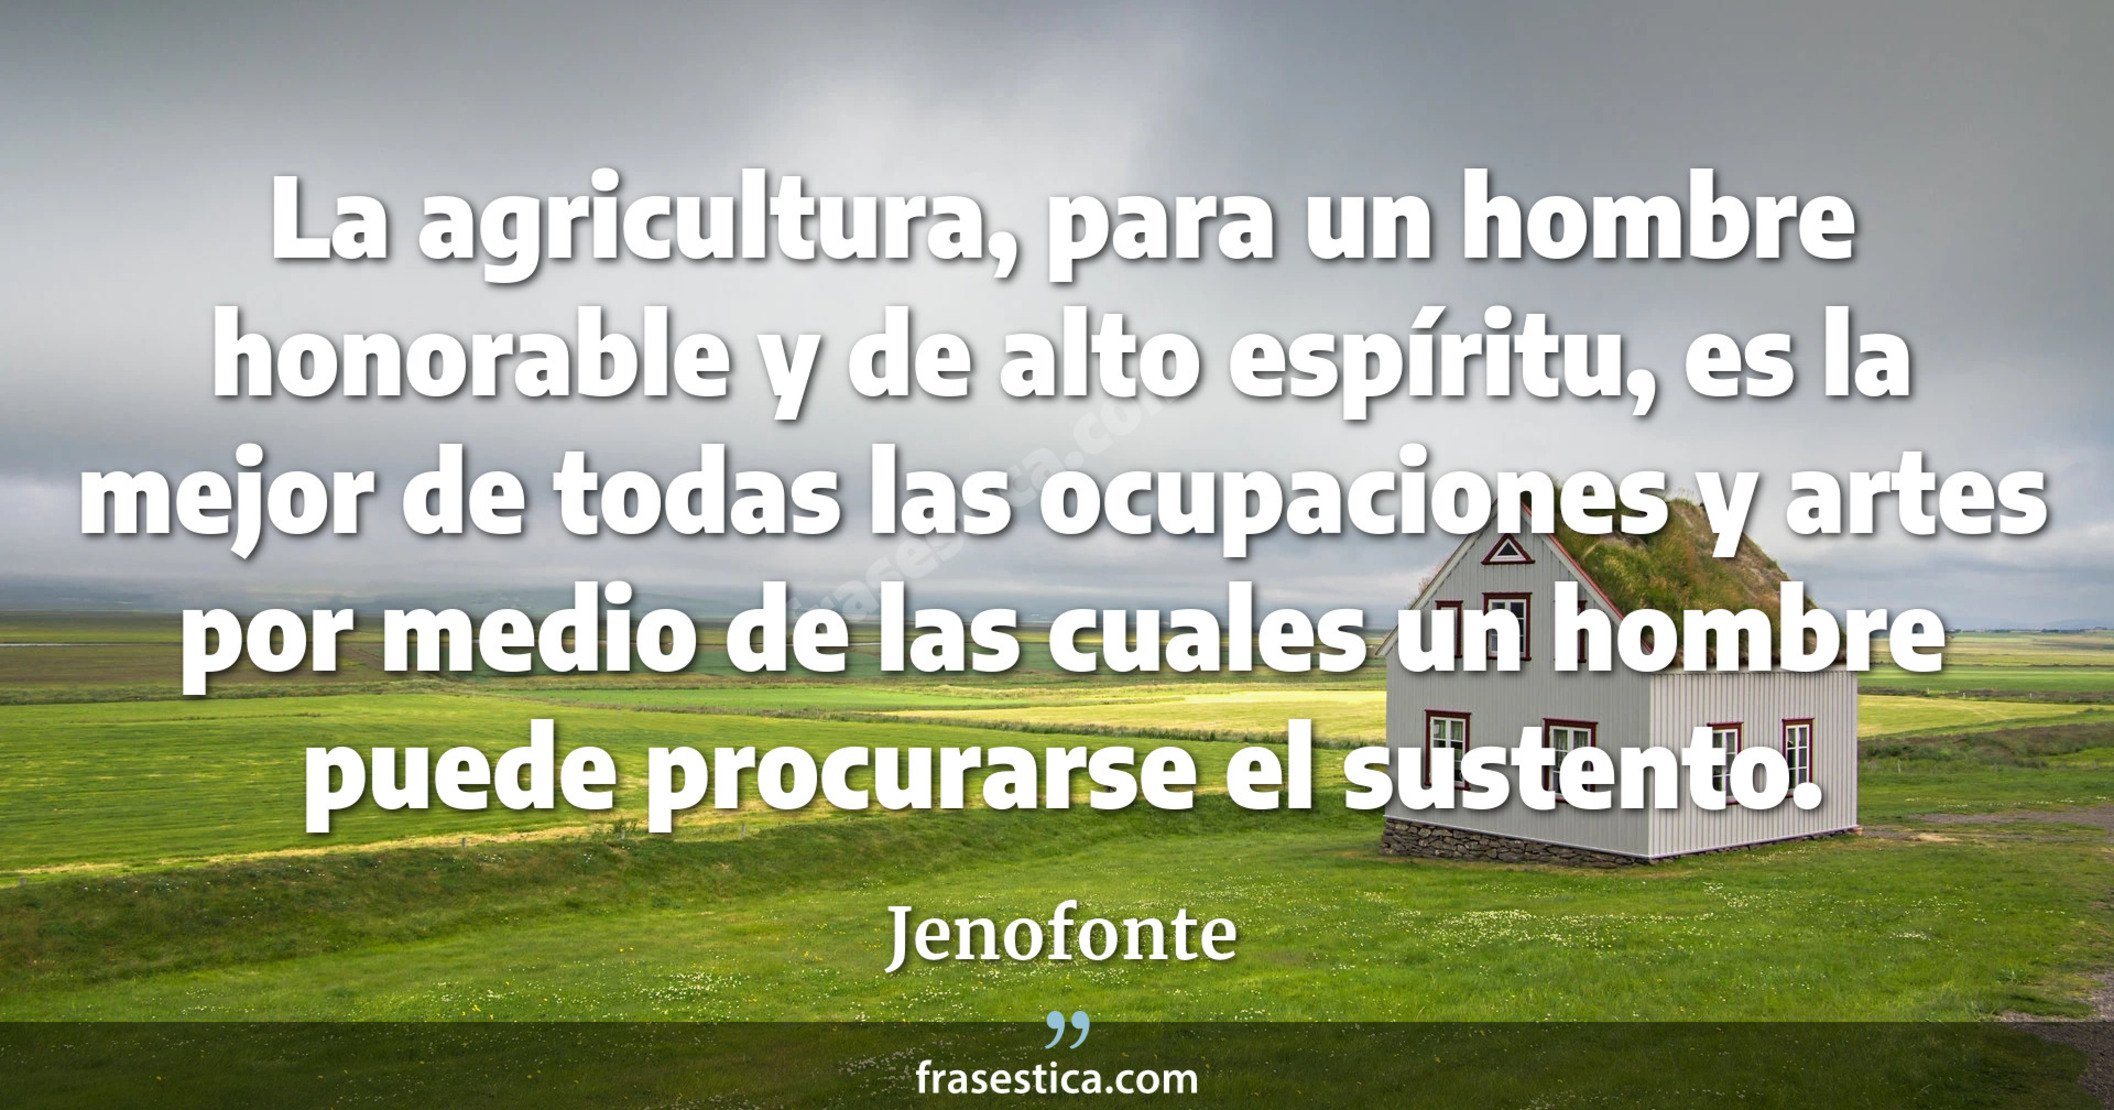 La agricultura, para un hombre honorable y de alto espíritu, es la mejor de todas las ocupaciones y artes por medio de las cuales un hombre puede procurarse el sustento. - Jenofonte